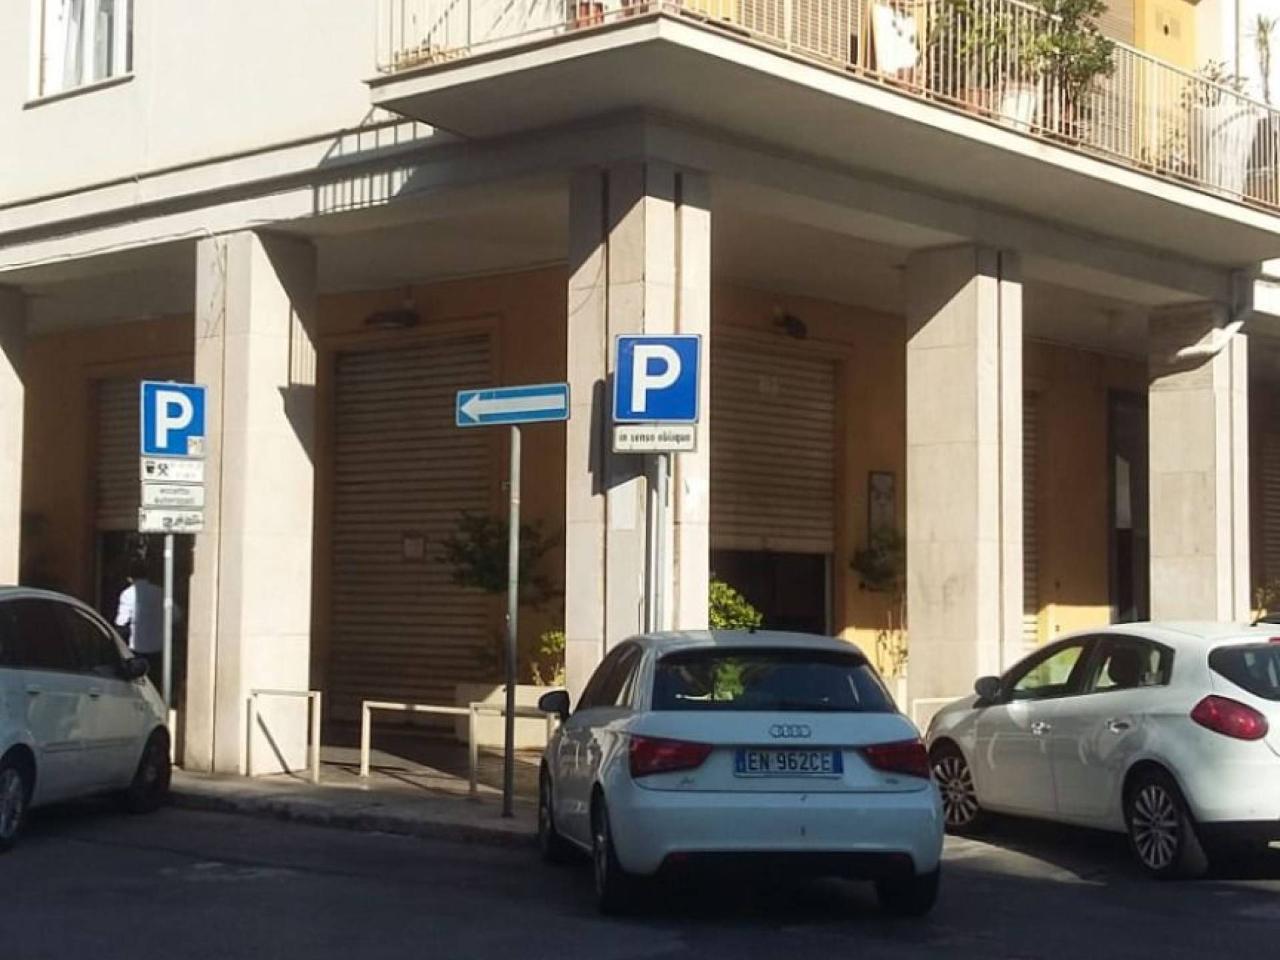 Negozio in affitto a Palermo